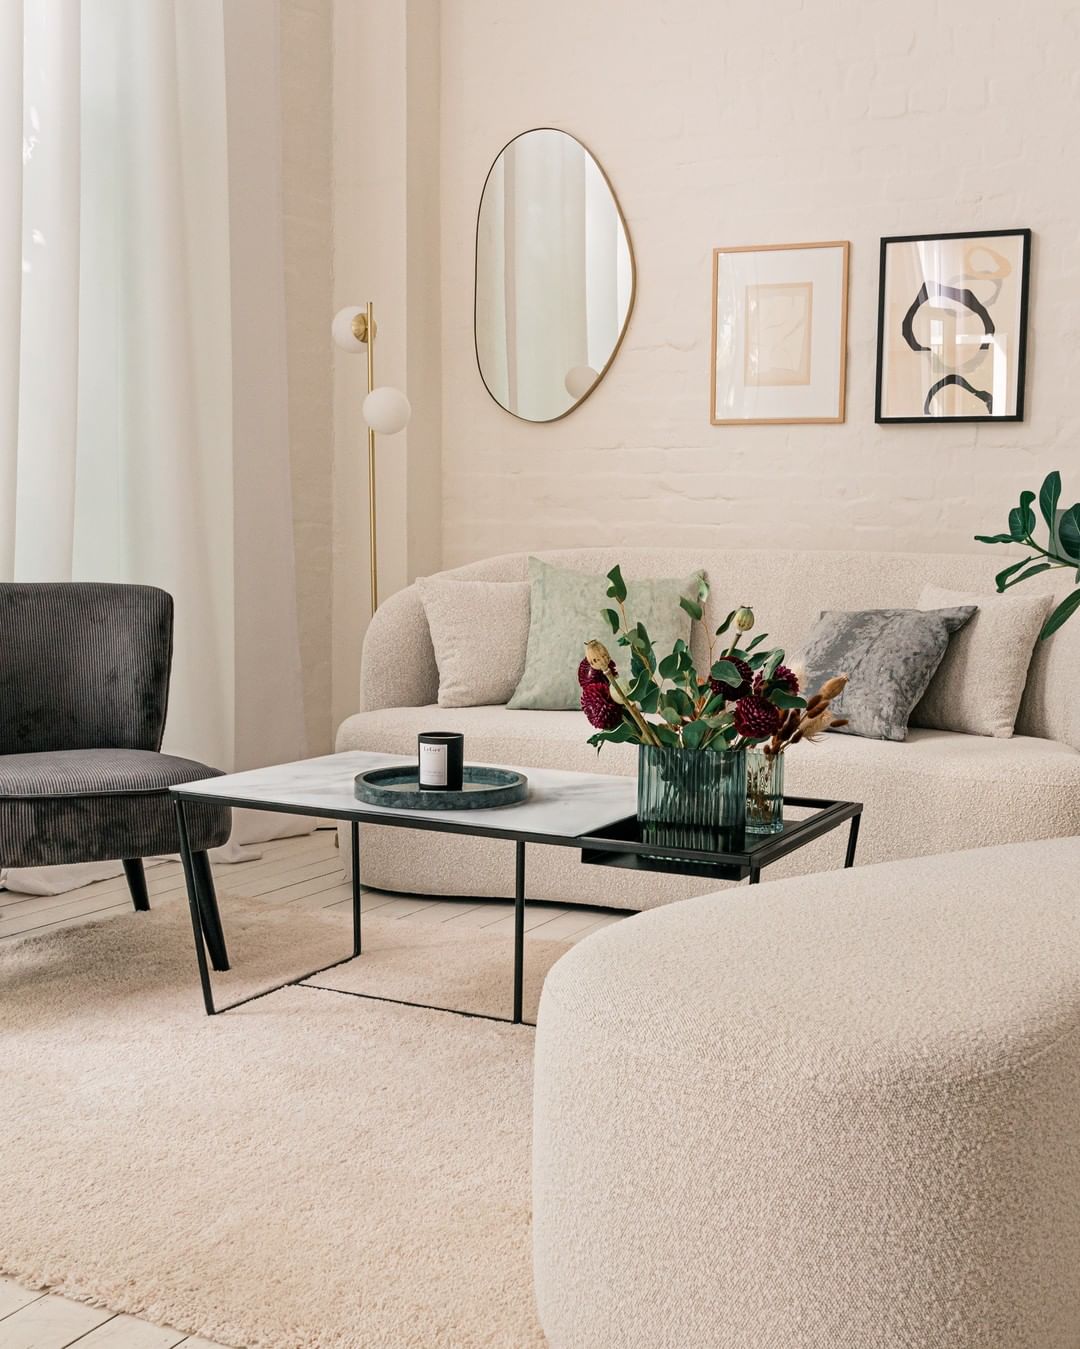 Otto (GmbH & Co KG) - Home is where your heart is! 🤍 Mit der Teddy-Couch aus der LeGer Home Kollektion wird dein Wohnzimmer zum kuschligen Wohlfühlort. 💭 #LeGerHomexOTTO #OTTOliving